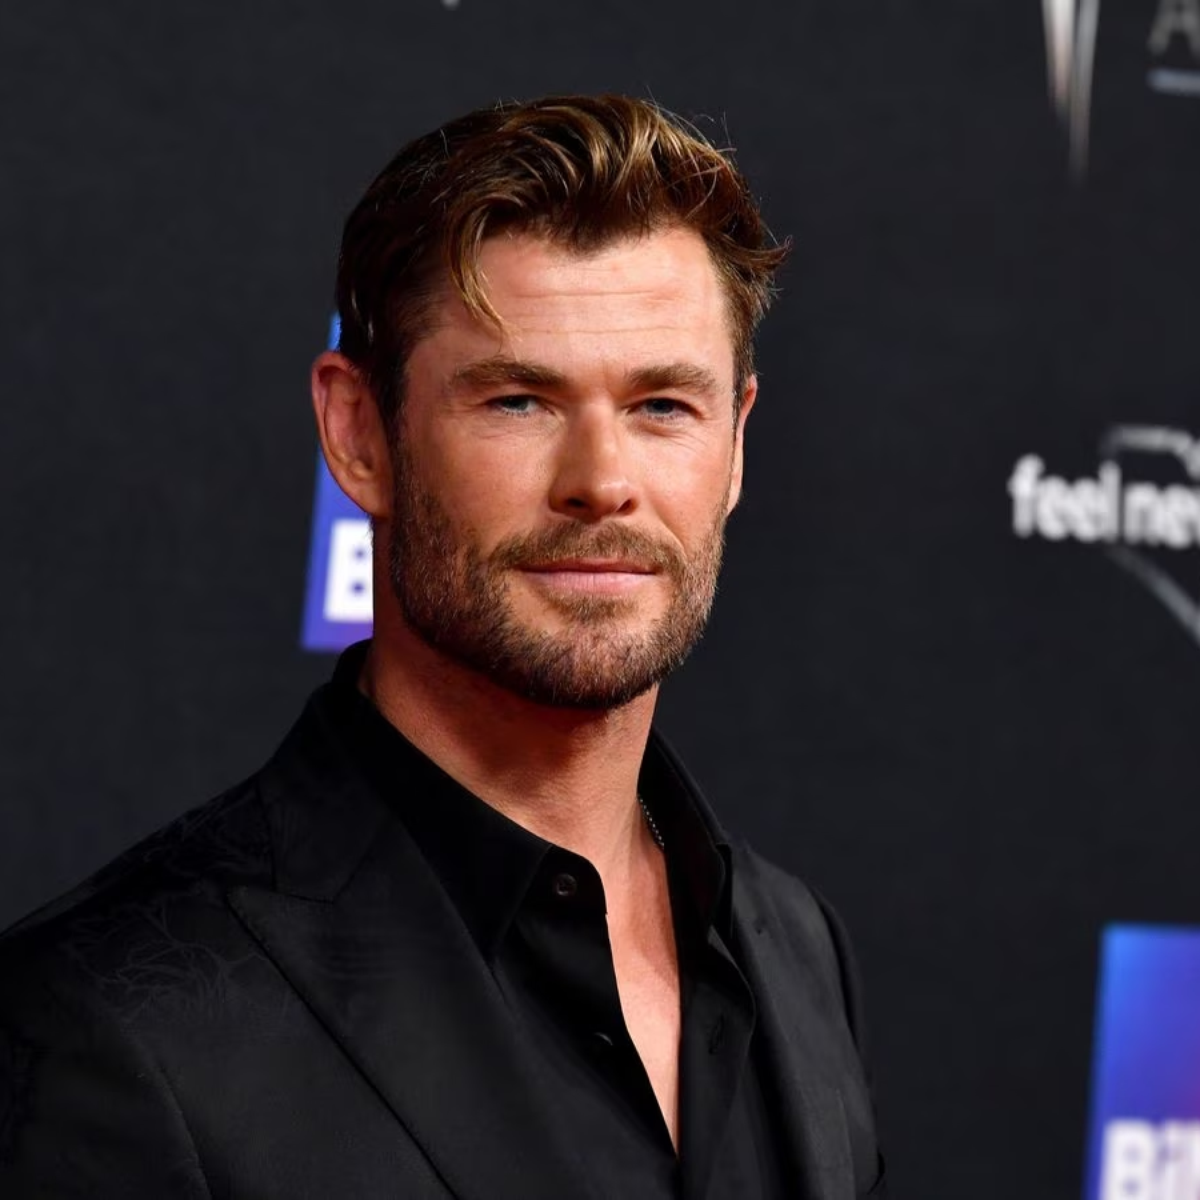 Entenda a mutação genética de Chris Hemsworth, ator de 'Thor', que